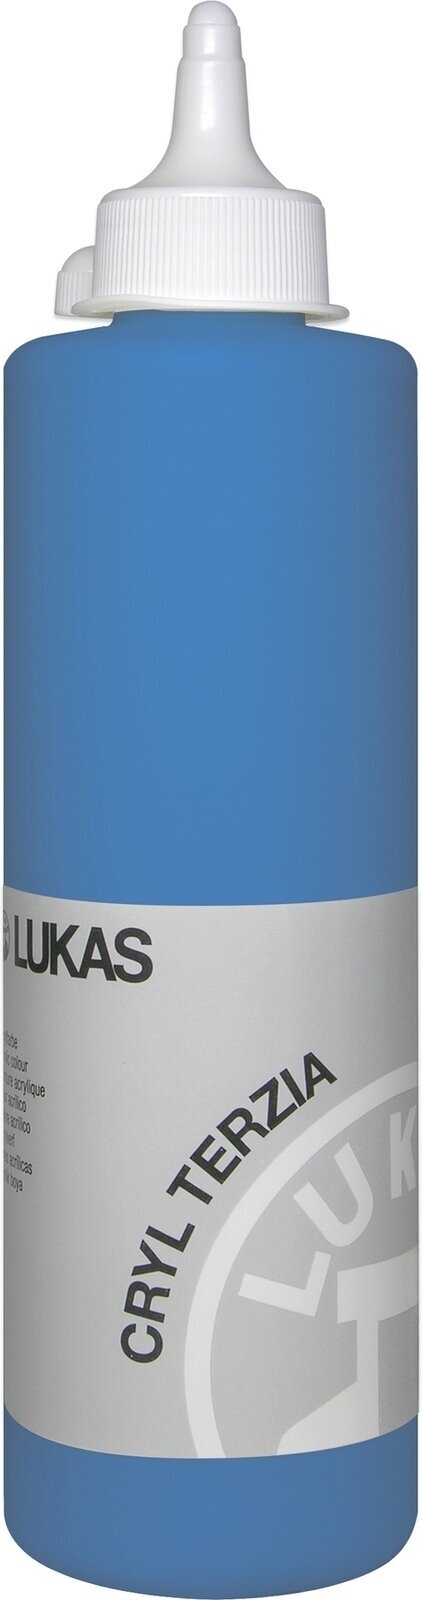 Peinture acrylique Lukas Cryl Terzia Acrylic Paint Plastic Bottle Peinture acrylique Primary Blue 500 ml 1 pc